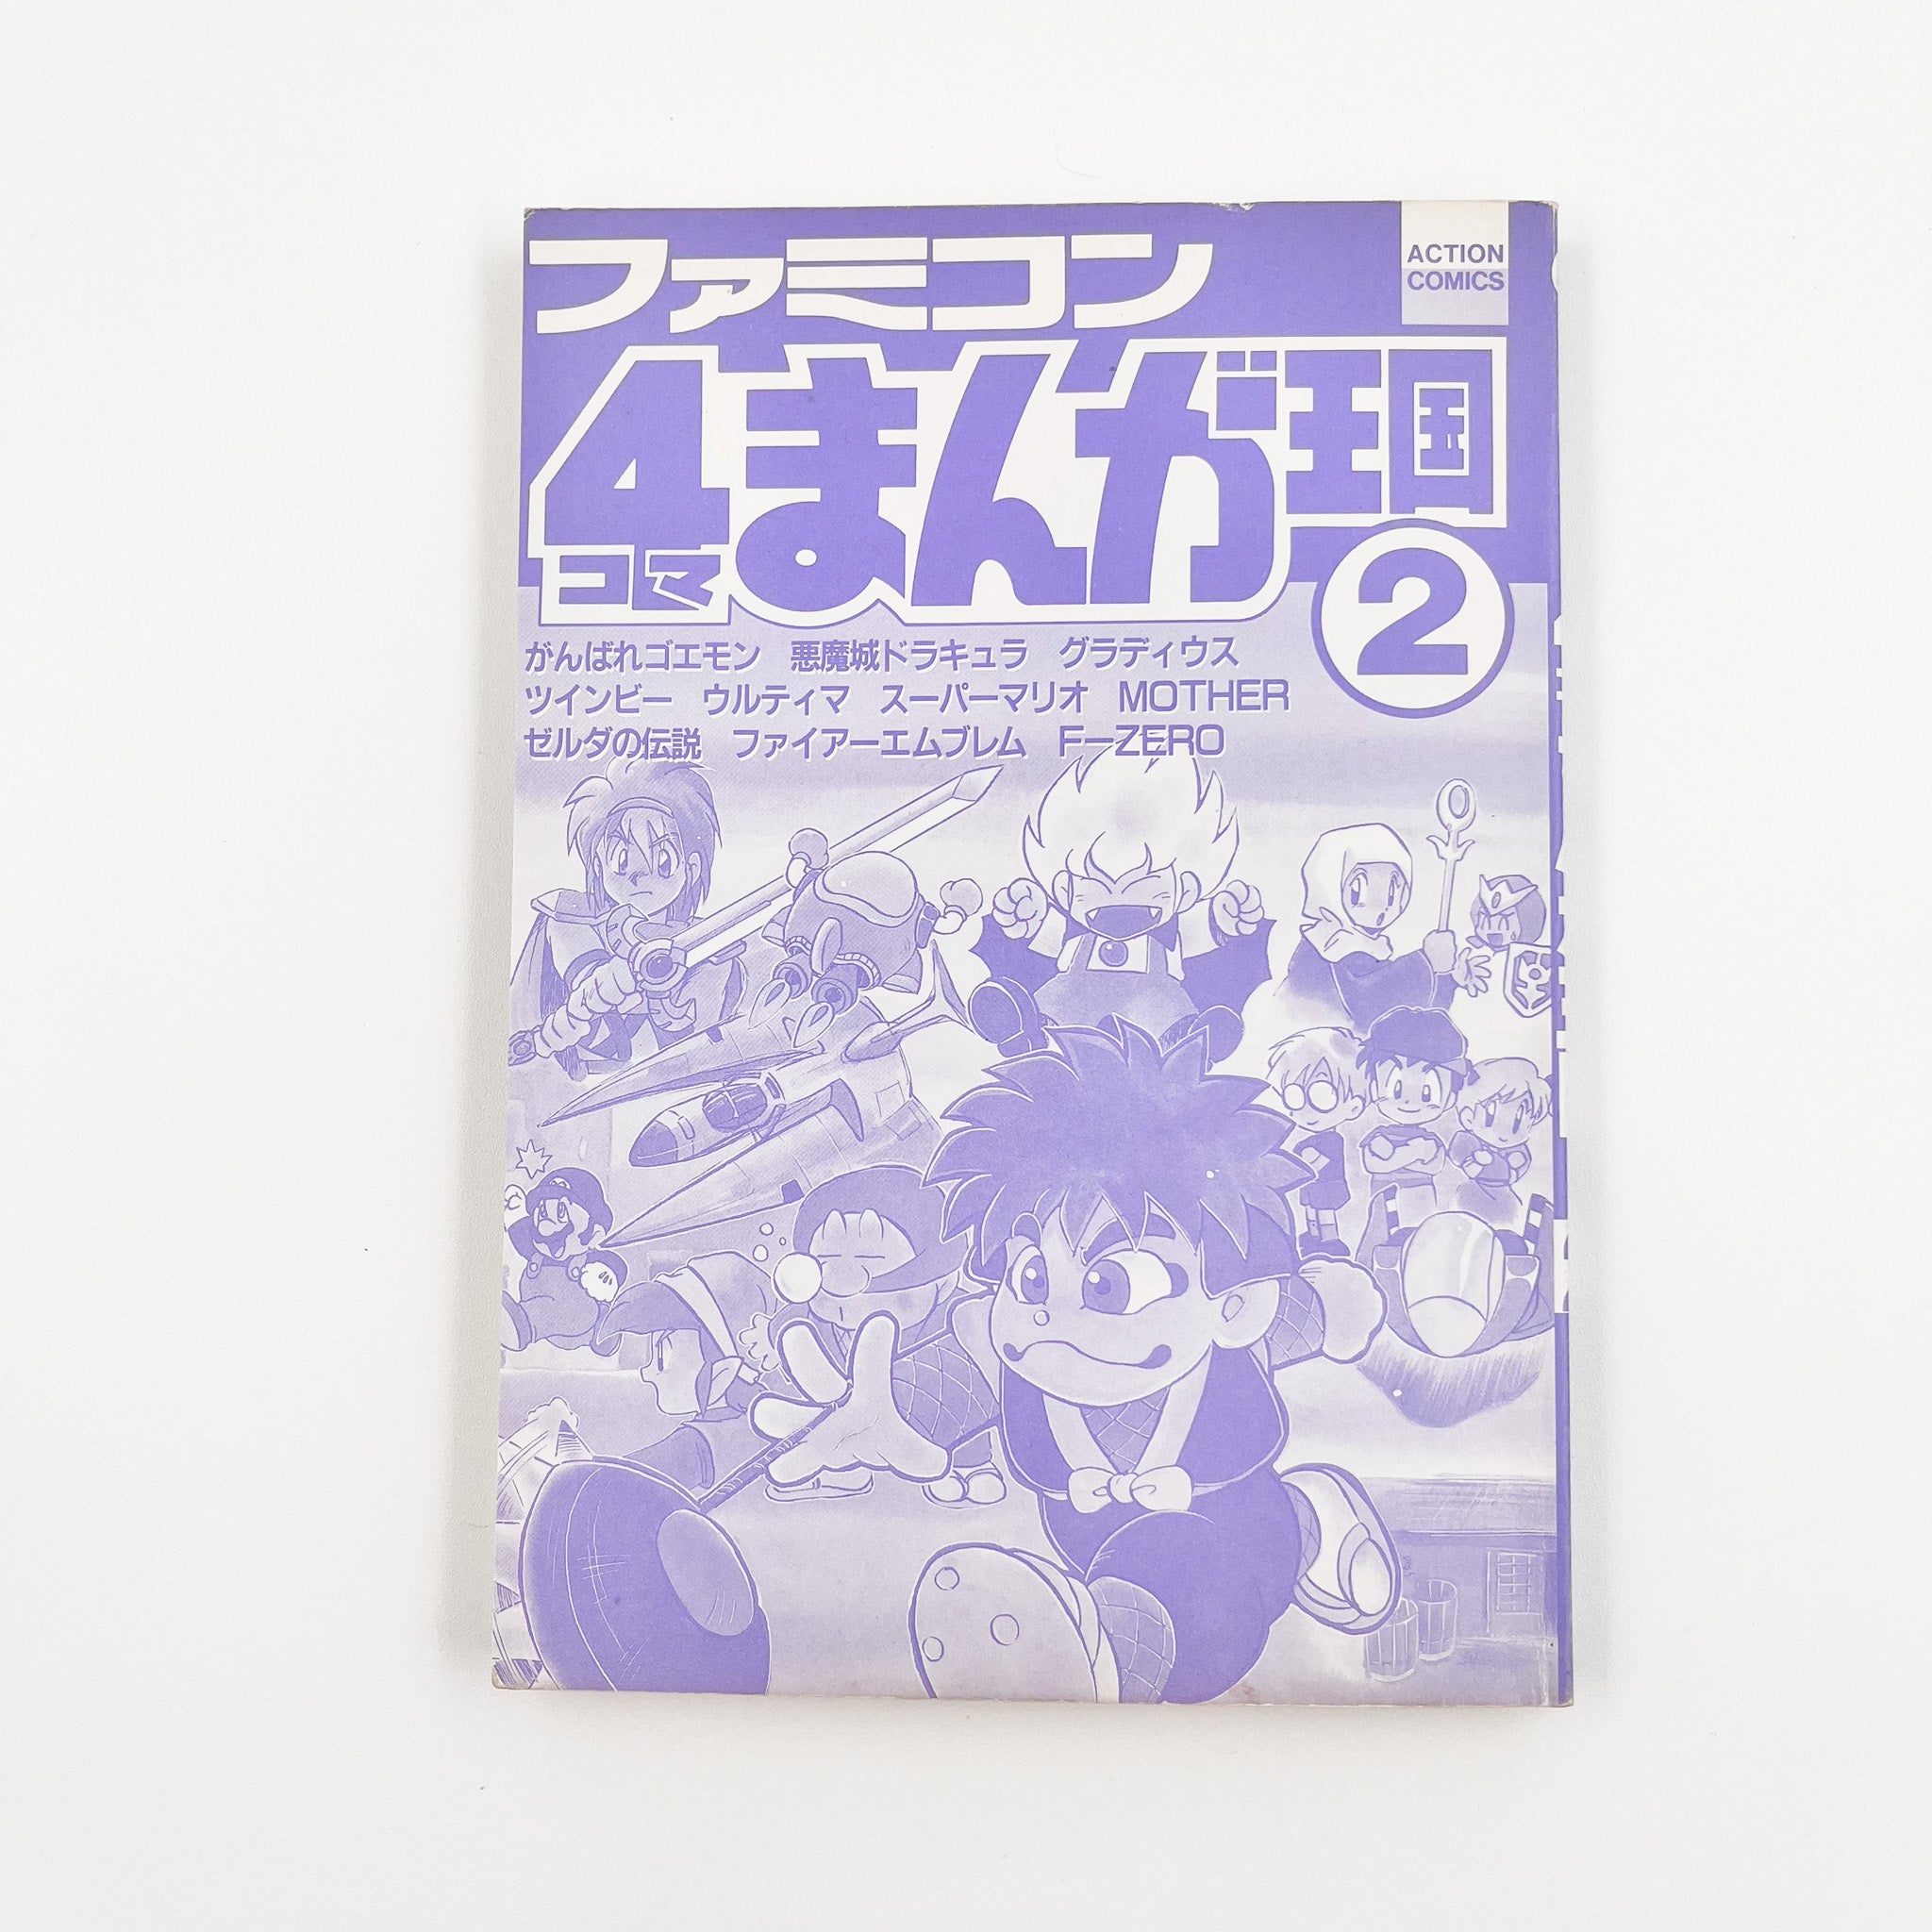 Famicom 4koma Manga Kingdom, Volume 2 (1992)